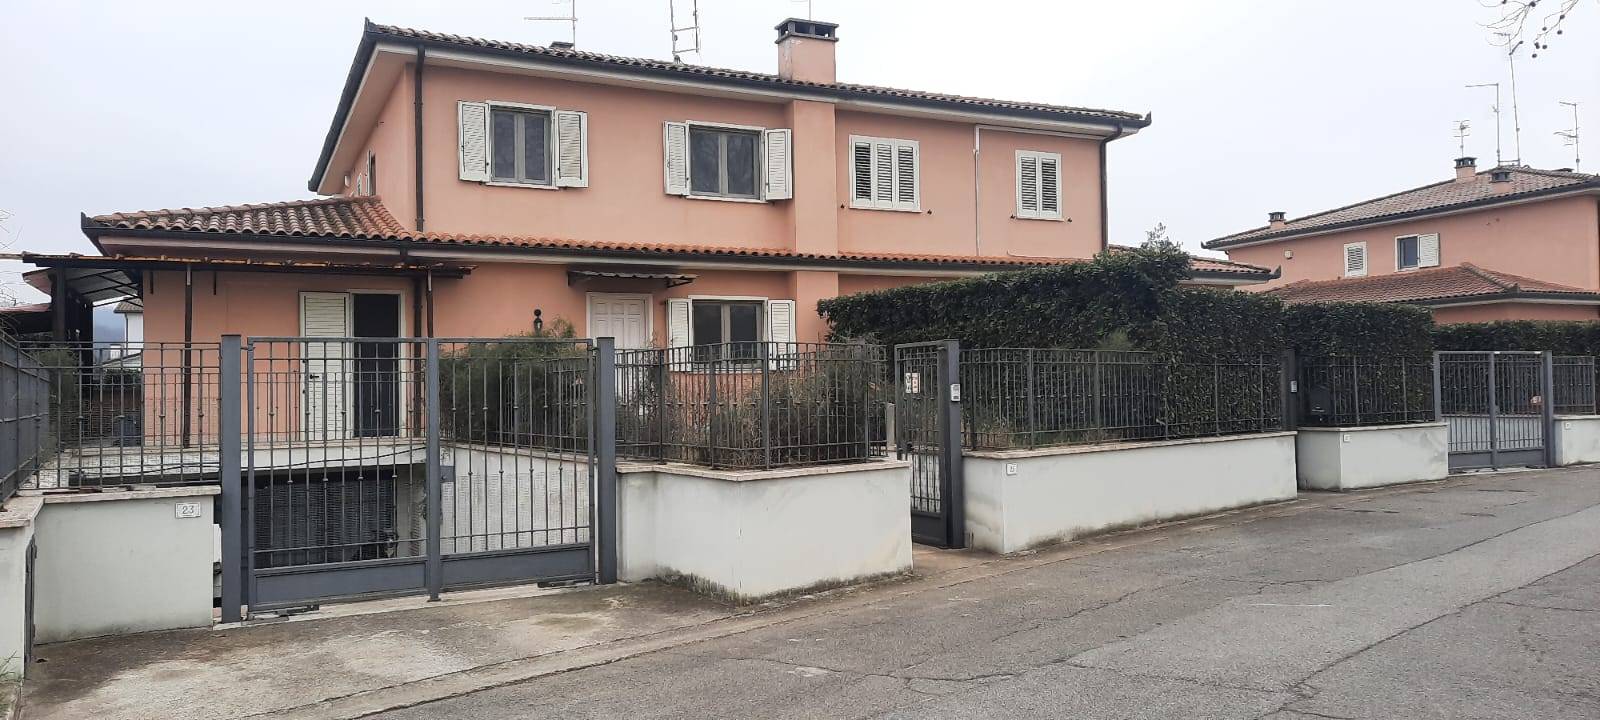 Villa in vendita a Attigliano, 6 locali, zona Località: LaCroce, prezzo € 159.000 | PortaleAgenzieImmobiliari.it